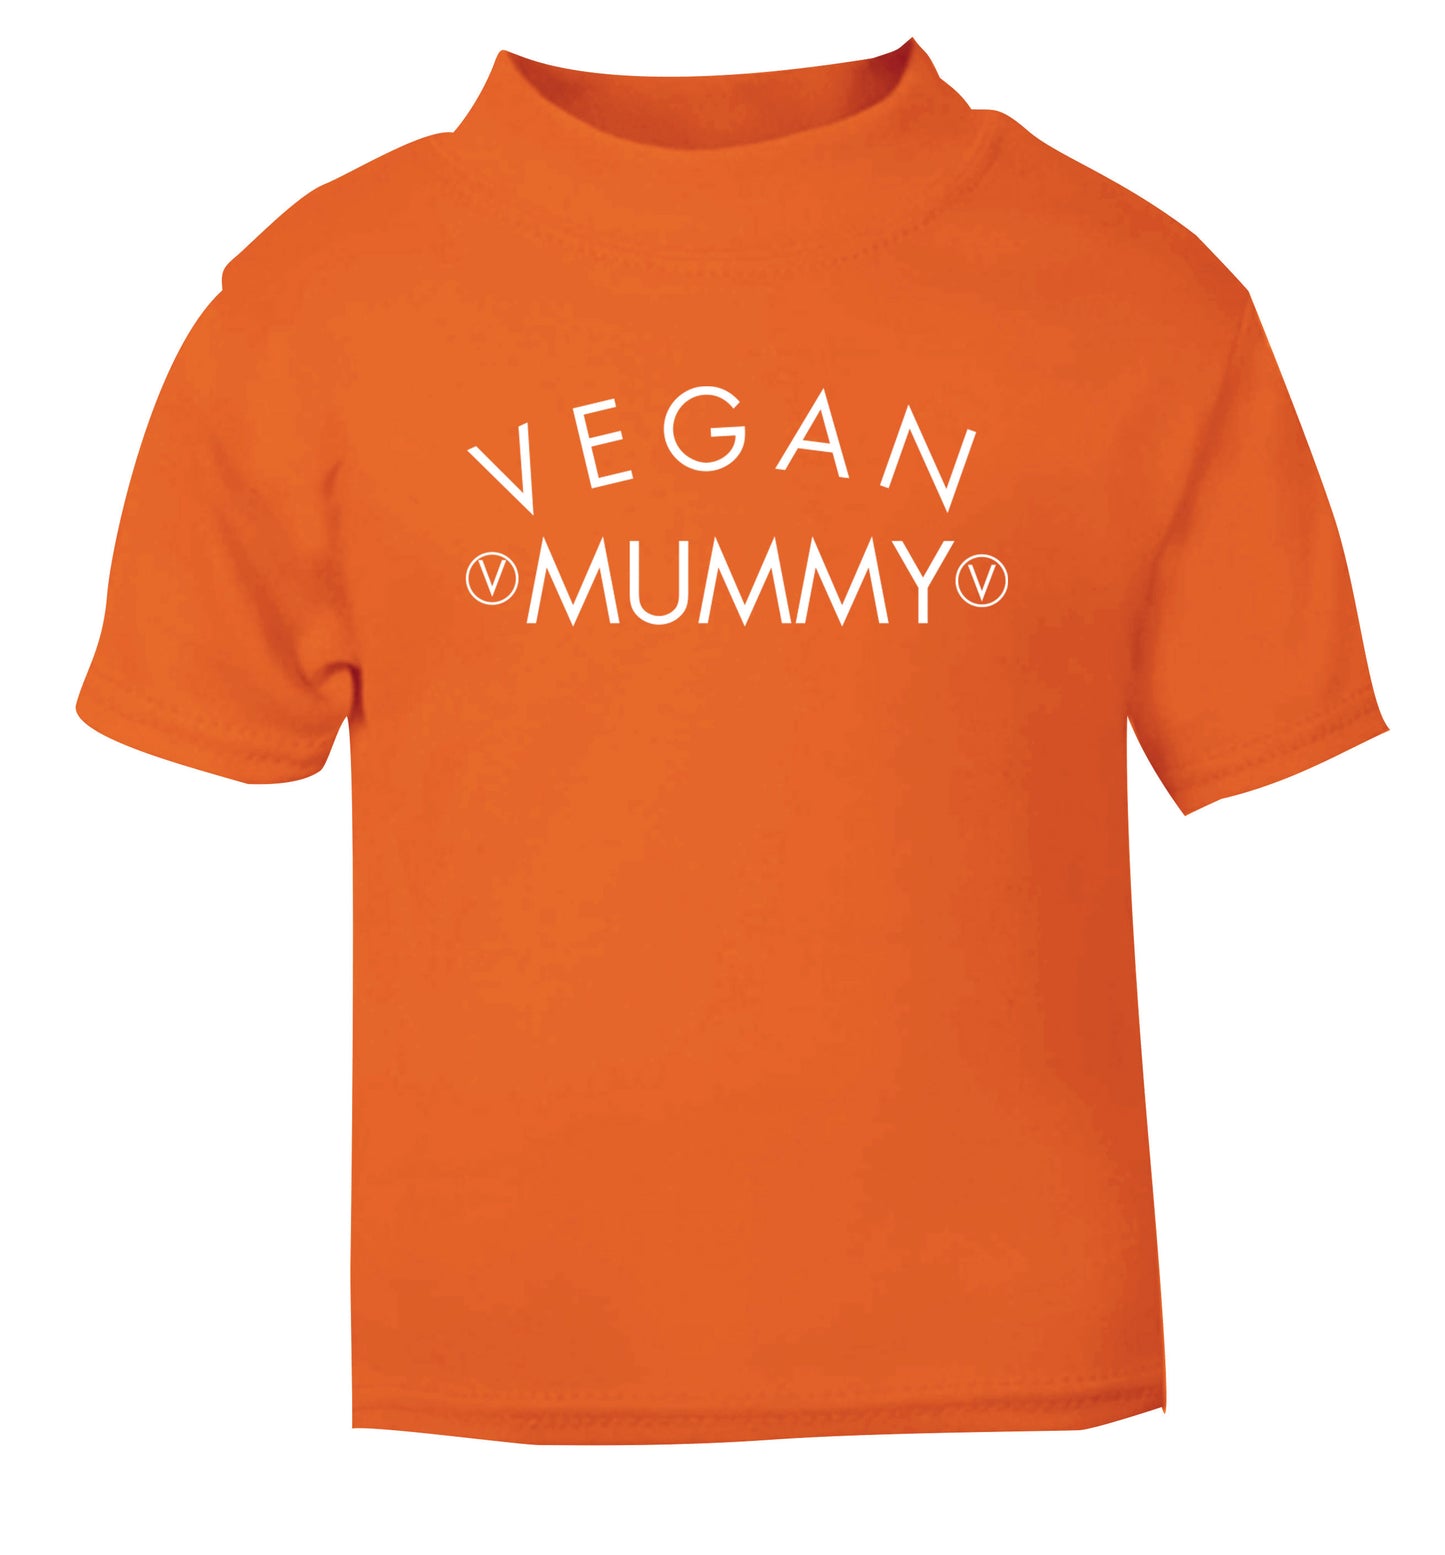 Vegan mummy orange Baby Toddler Tshirt 2 Years